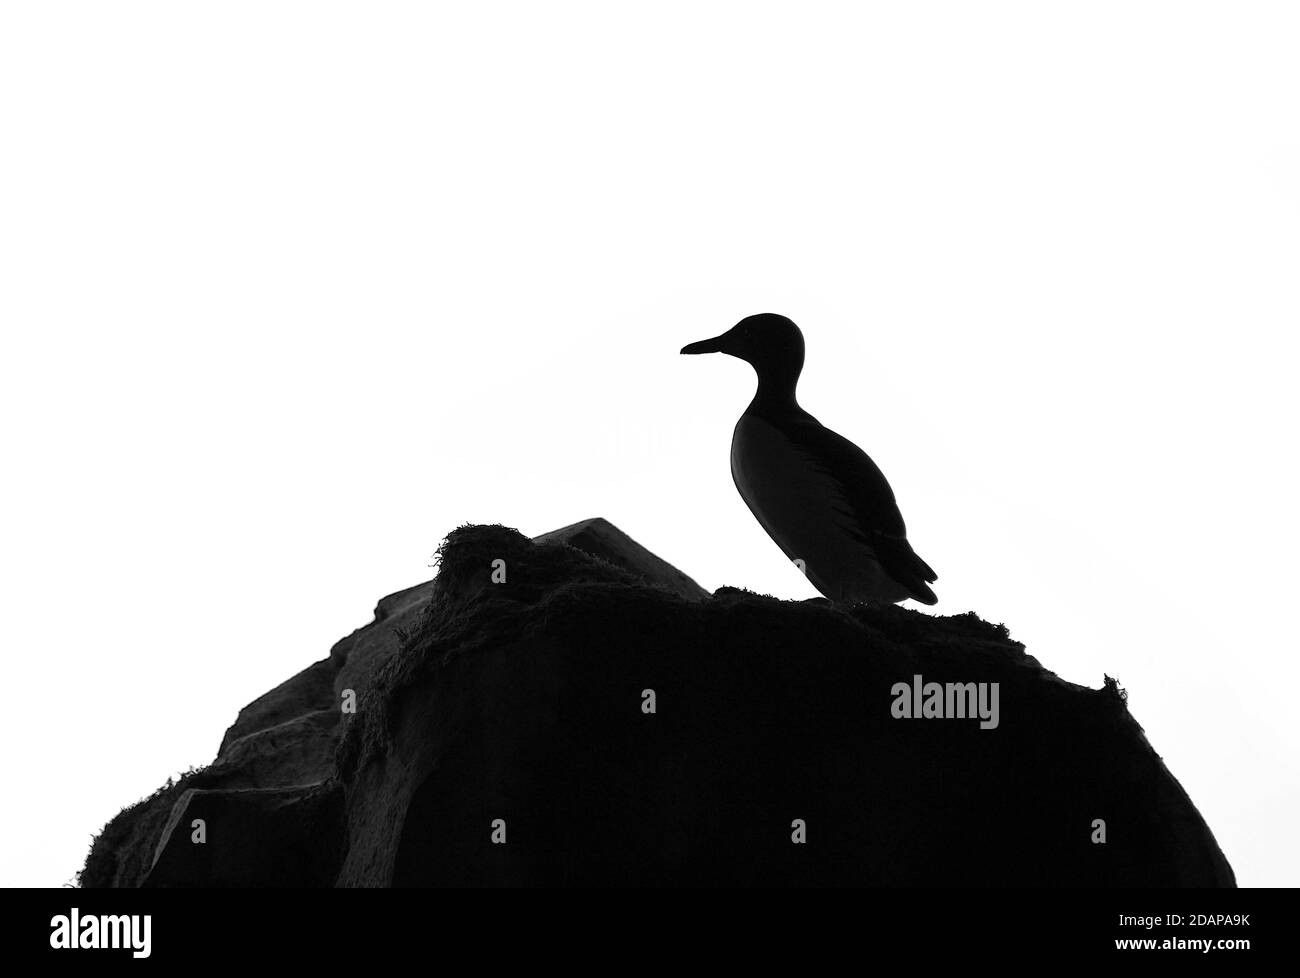 Ein Pinguin auf einem Felsen in Silhouette. Stockfoto